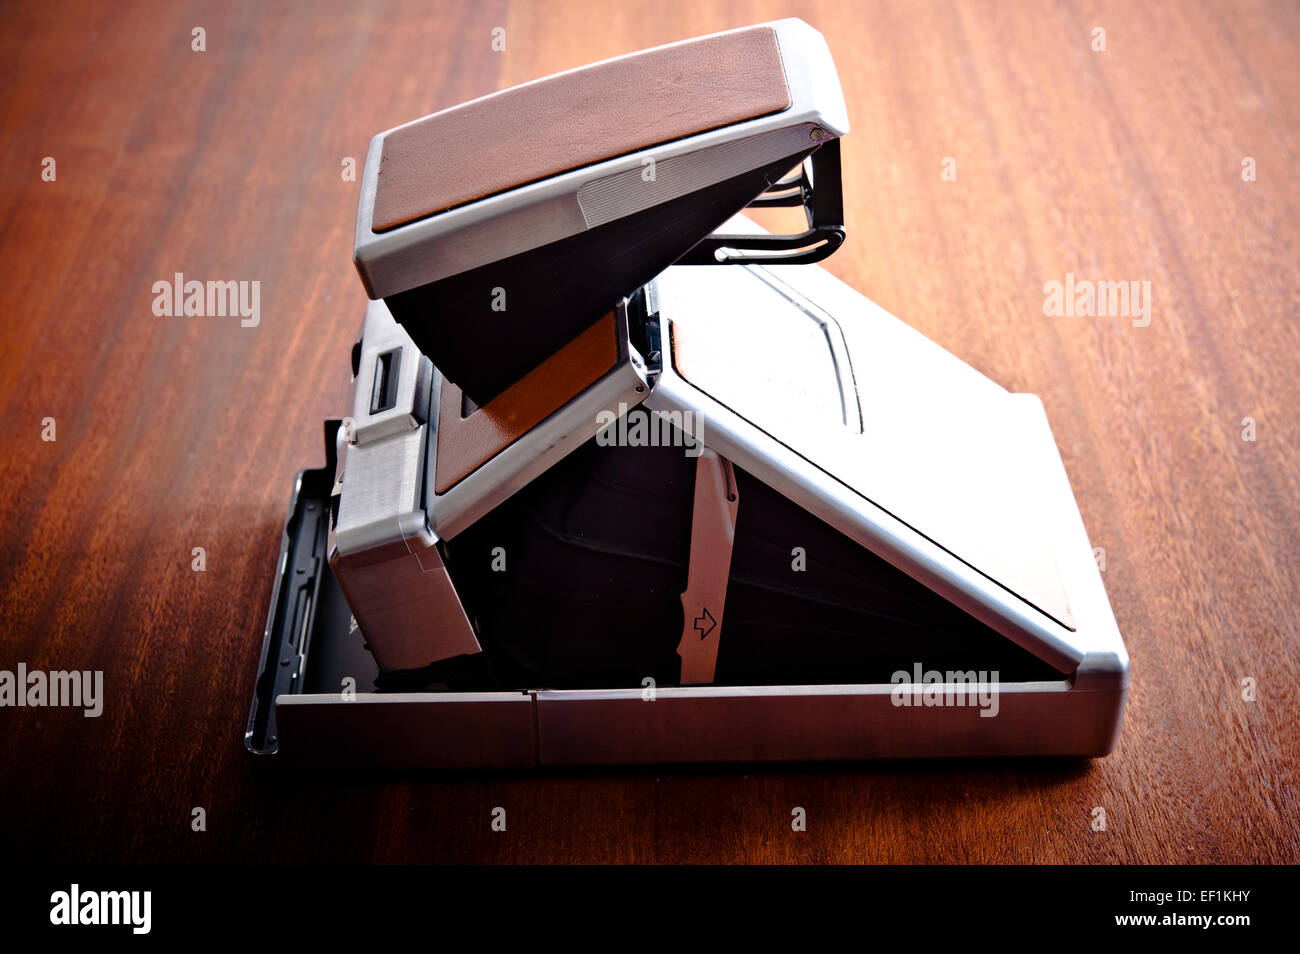 Polaroidkamera SX-70 Land Stockfoto